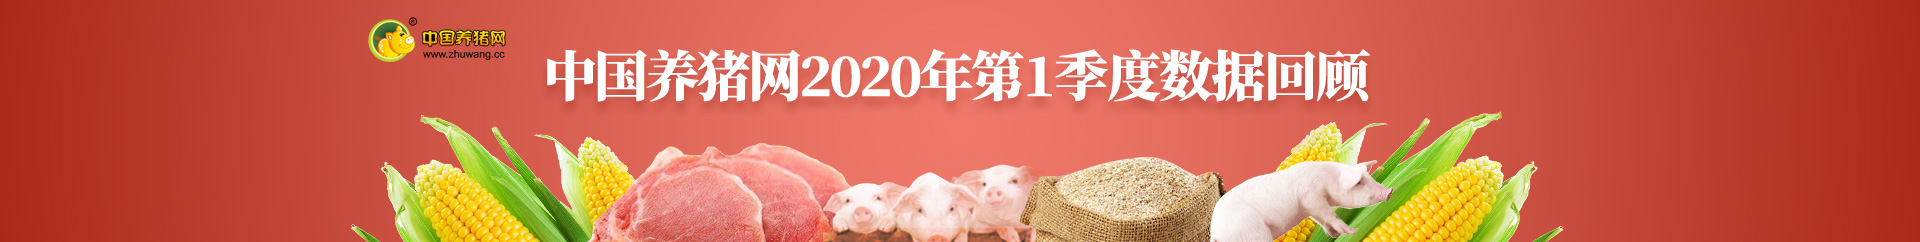 中国养猪网第四季度播报